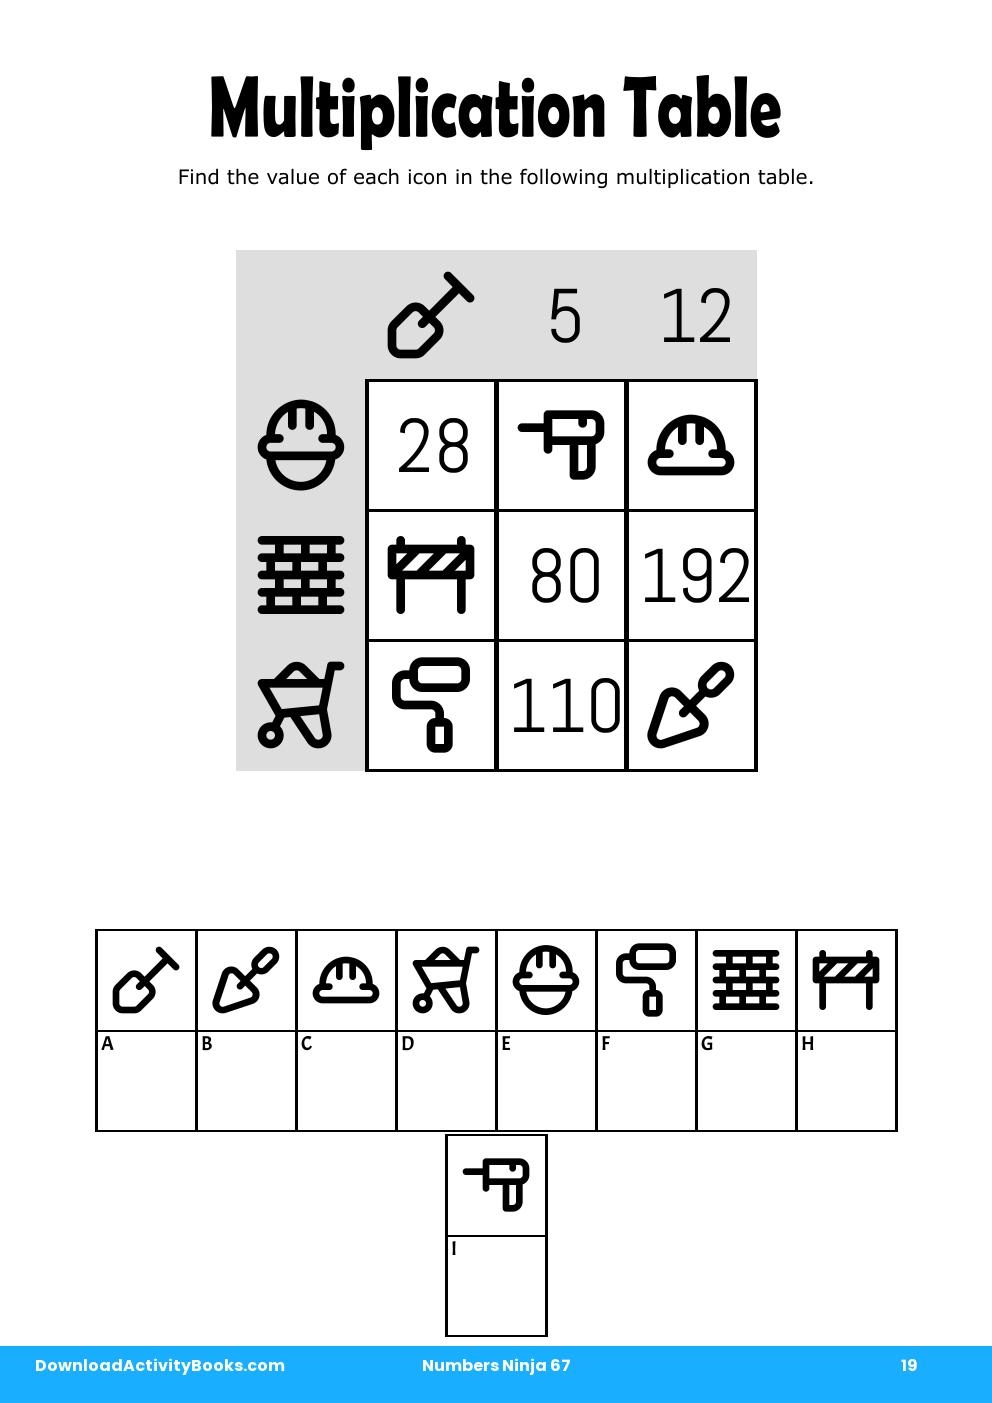 Multiplication Table in Numbers Ninja 67